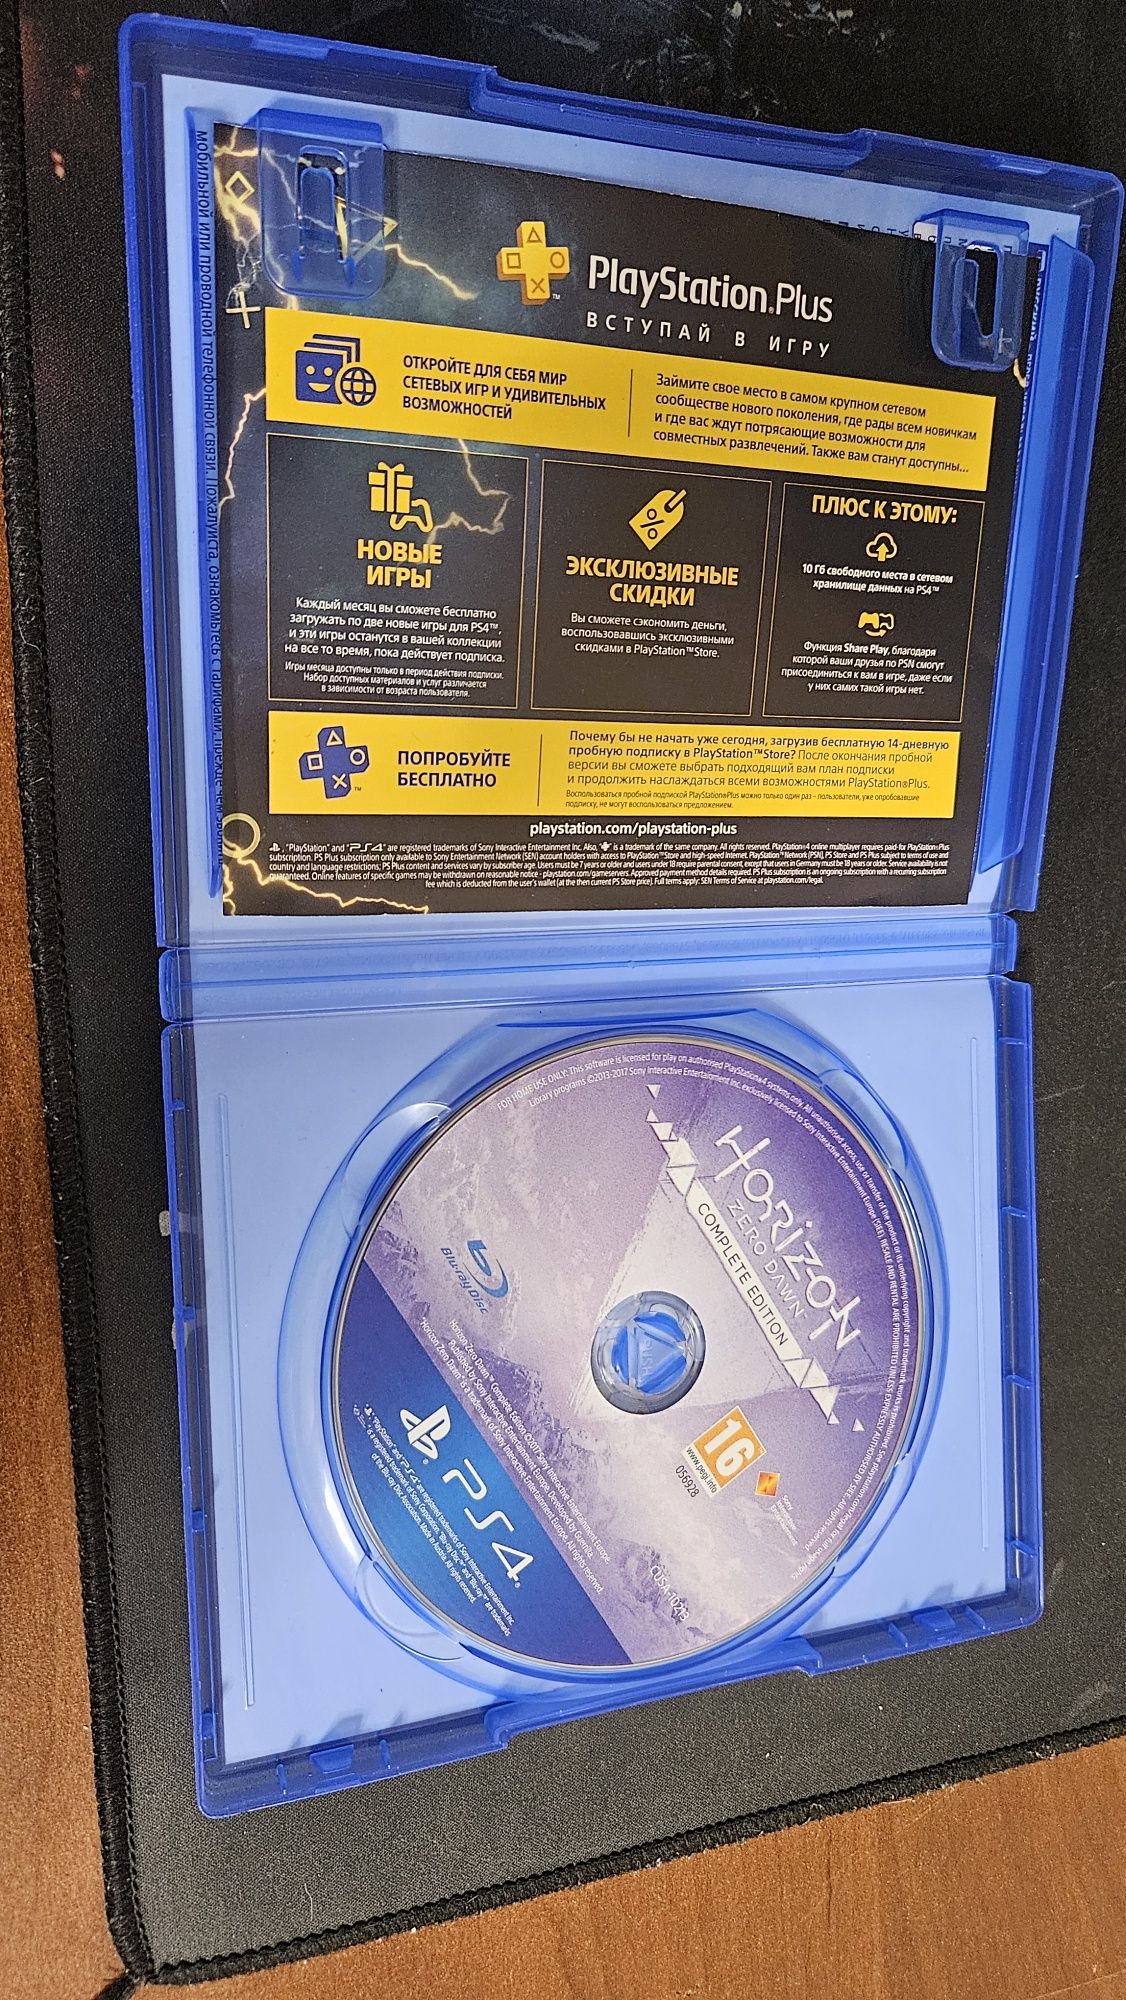 Ігровий диск на PS4 "Horizon zero dawn"